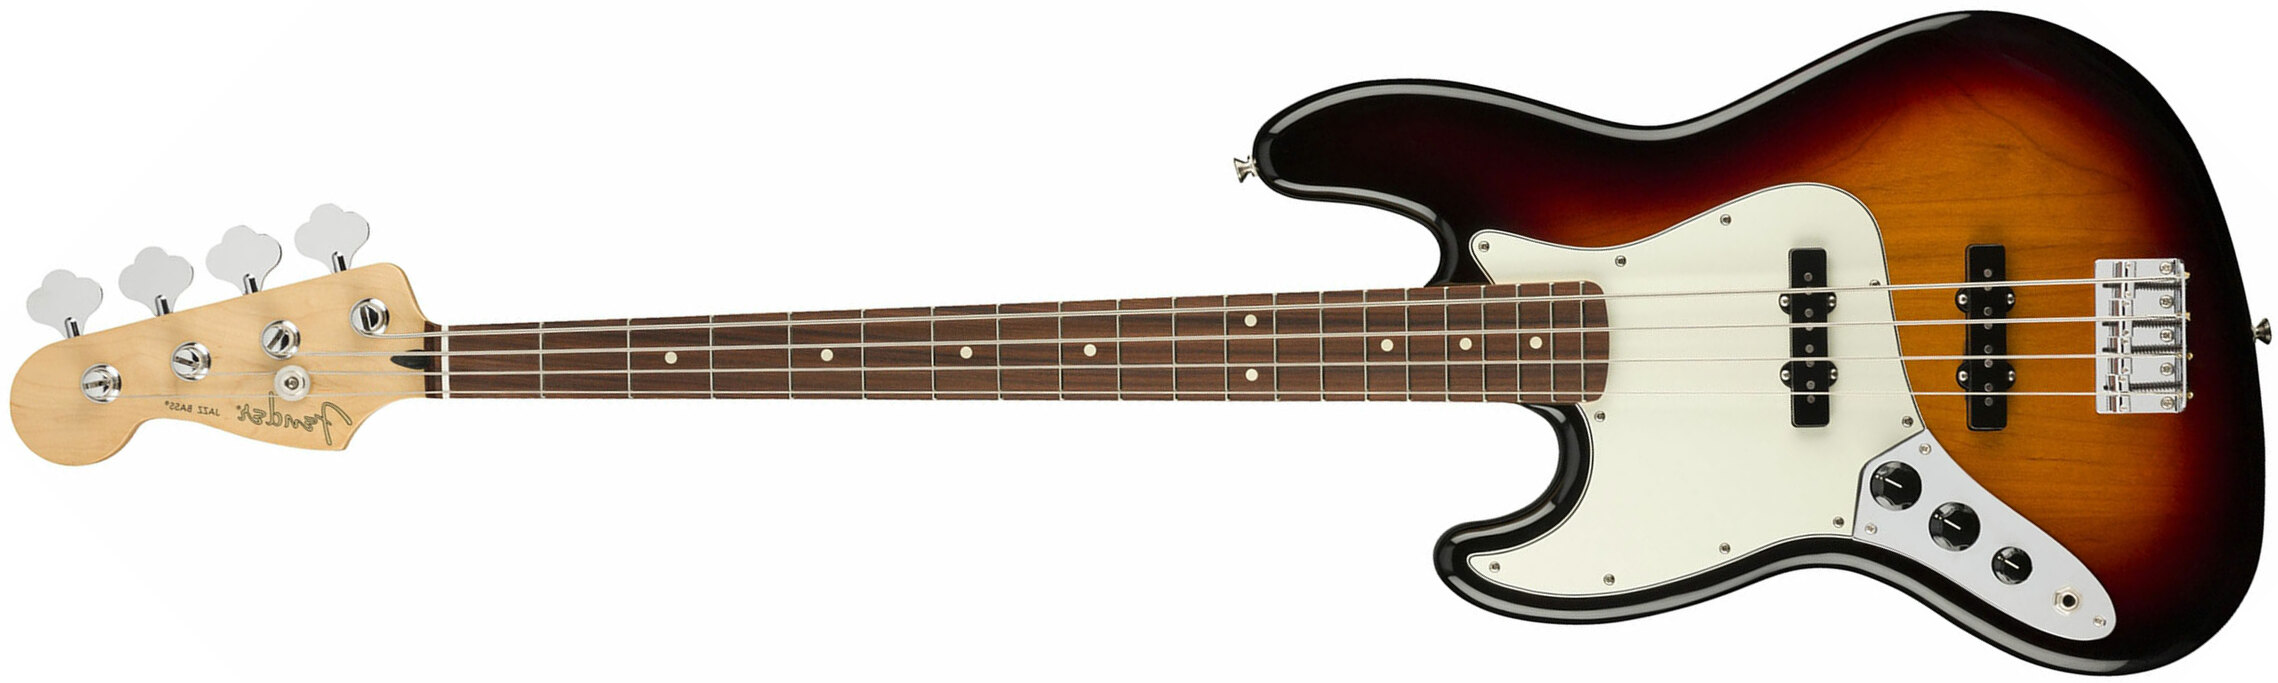 Fender Jazz Bass Player Lh Gaucher Mex Pf - 3-color Sunburst - Solid body elektrische bas - Main picture